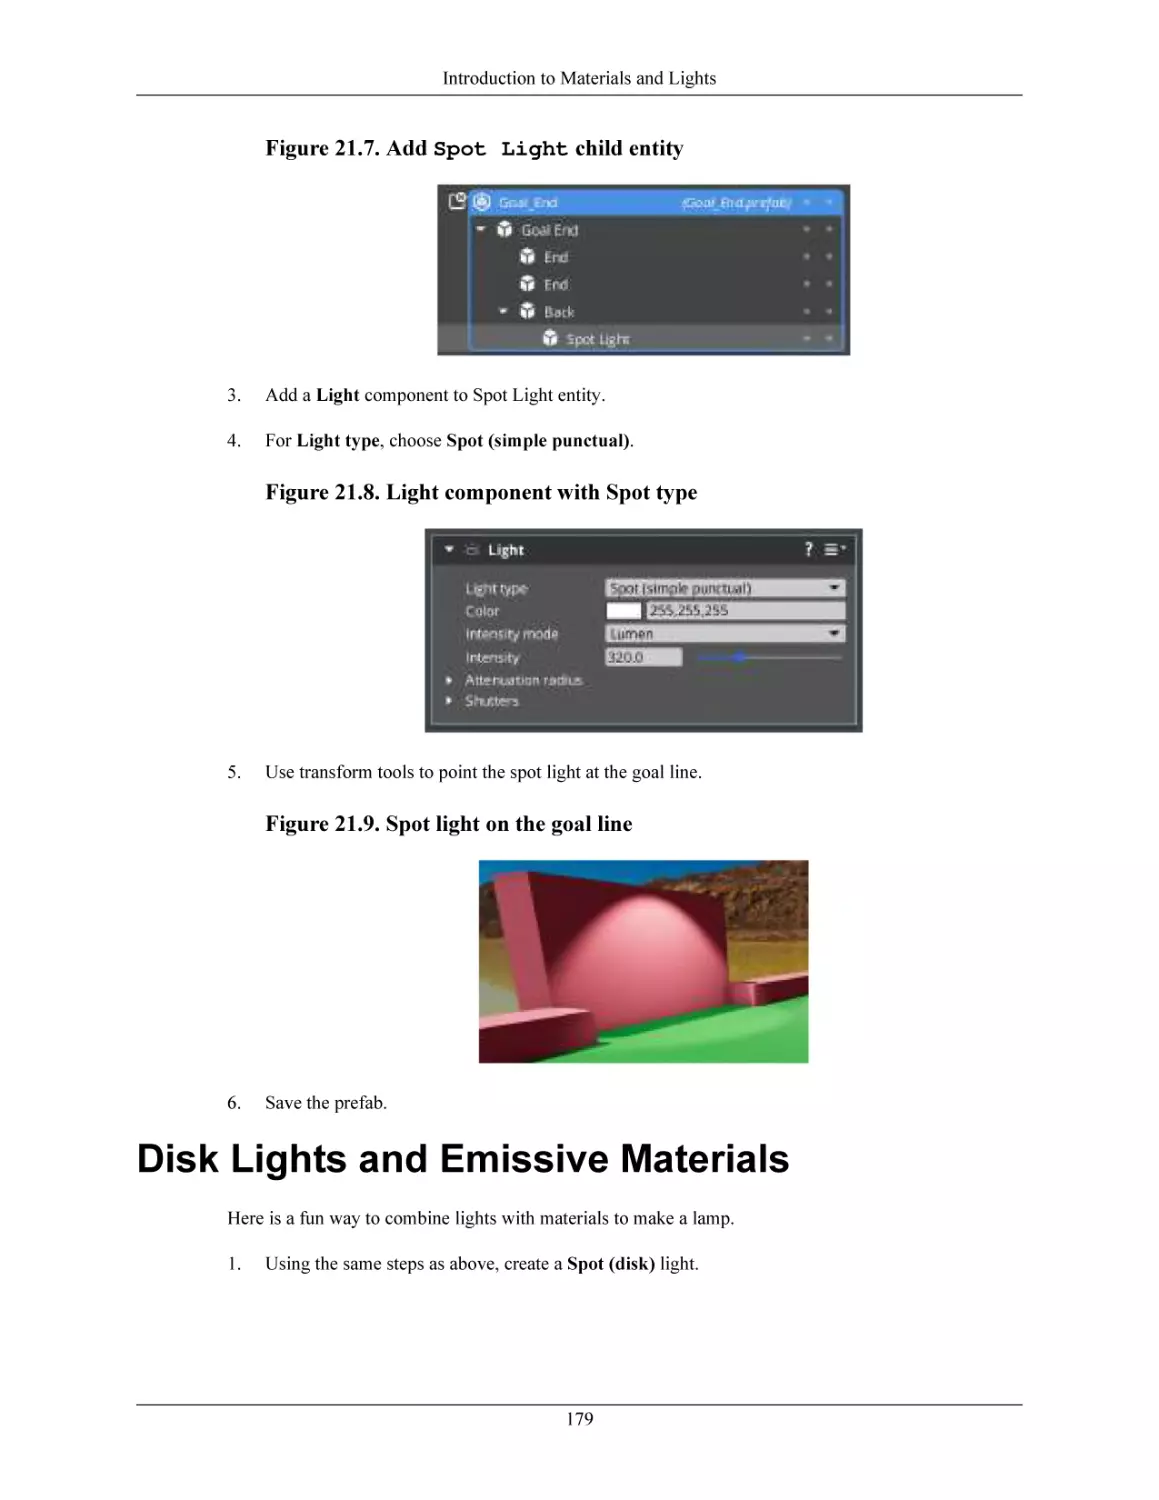 Disk Lights and Emissive Materials